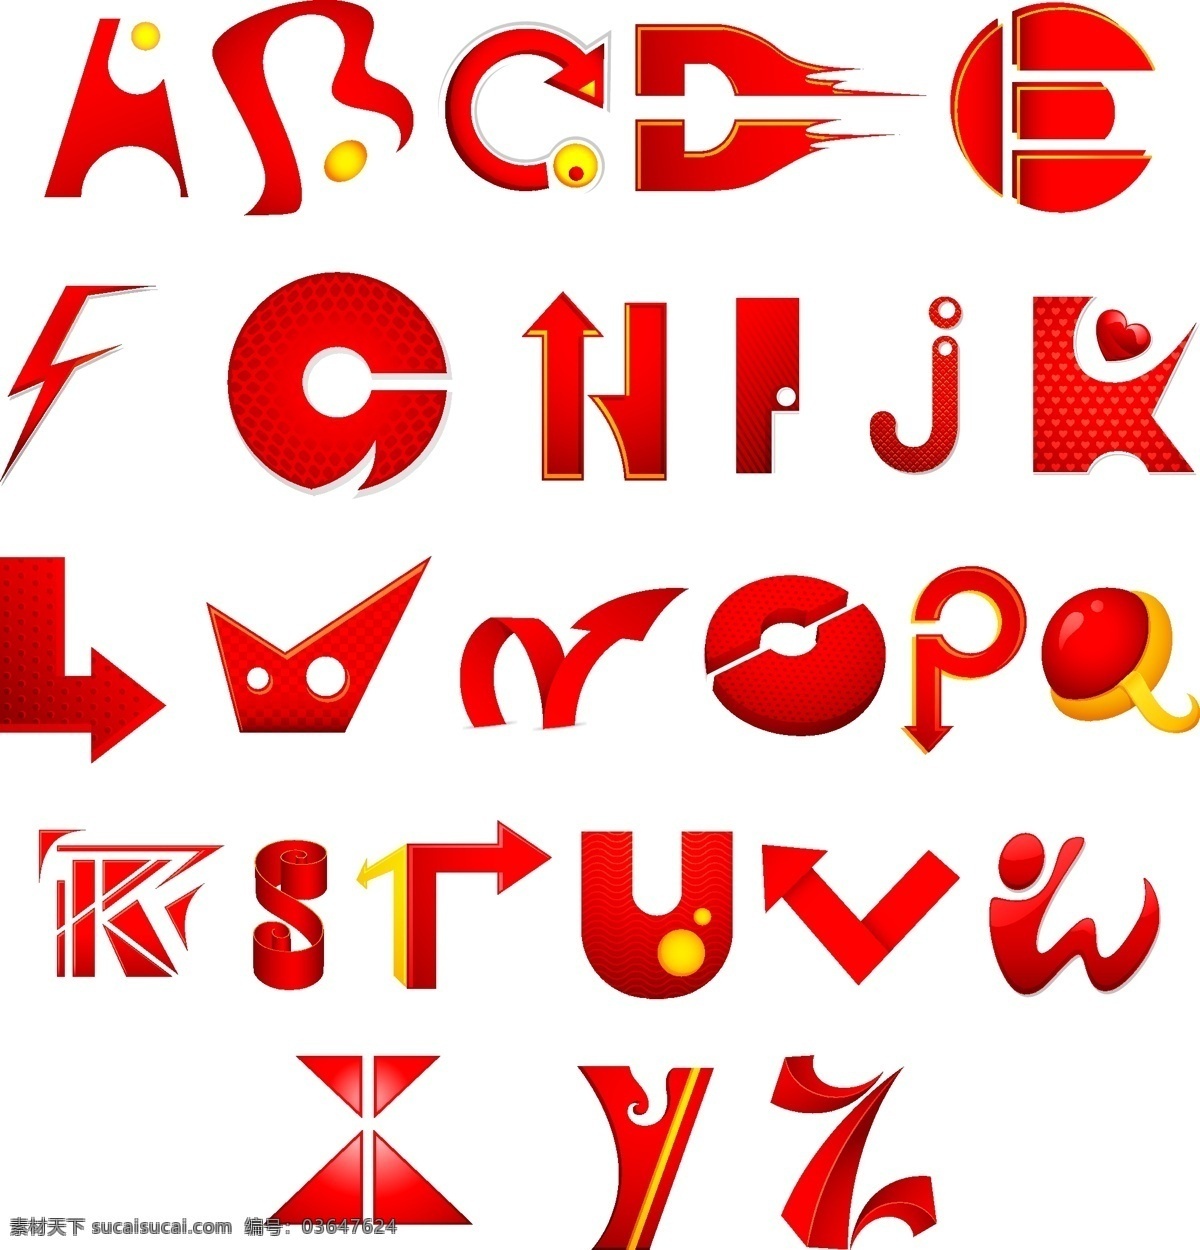 变形字母 创意字母 矢量 立体字母 拼音 时尚字母 艺术字母 英文 创意 字母 模板下载 英文字体 英文艺术字 拼音字母 字母设计 梦幻字母 潮流字母 设计字母 字母主题 矢量图